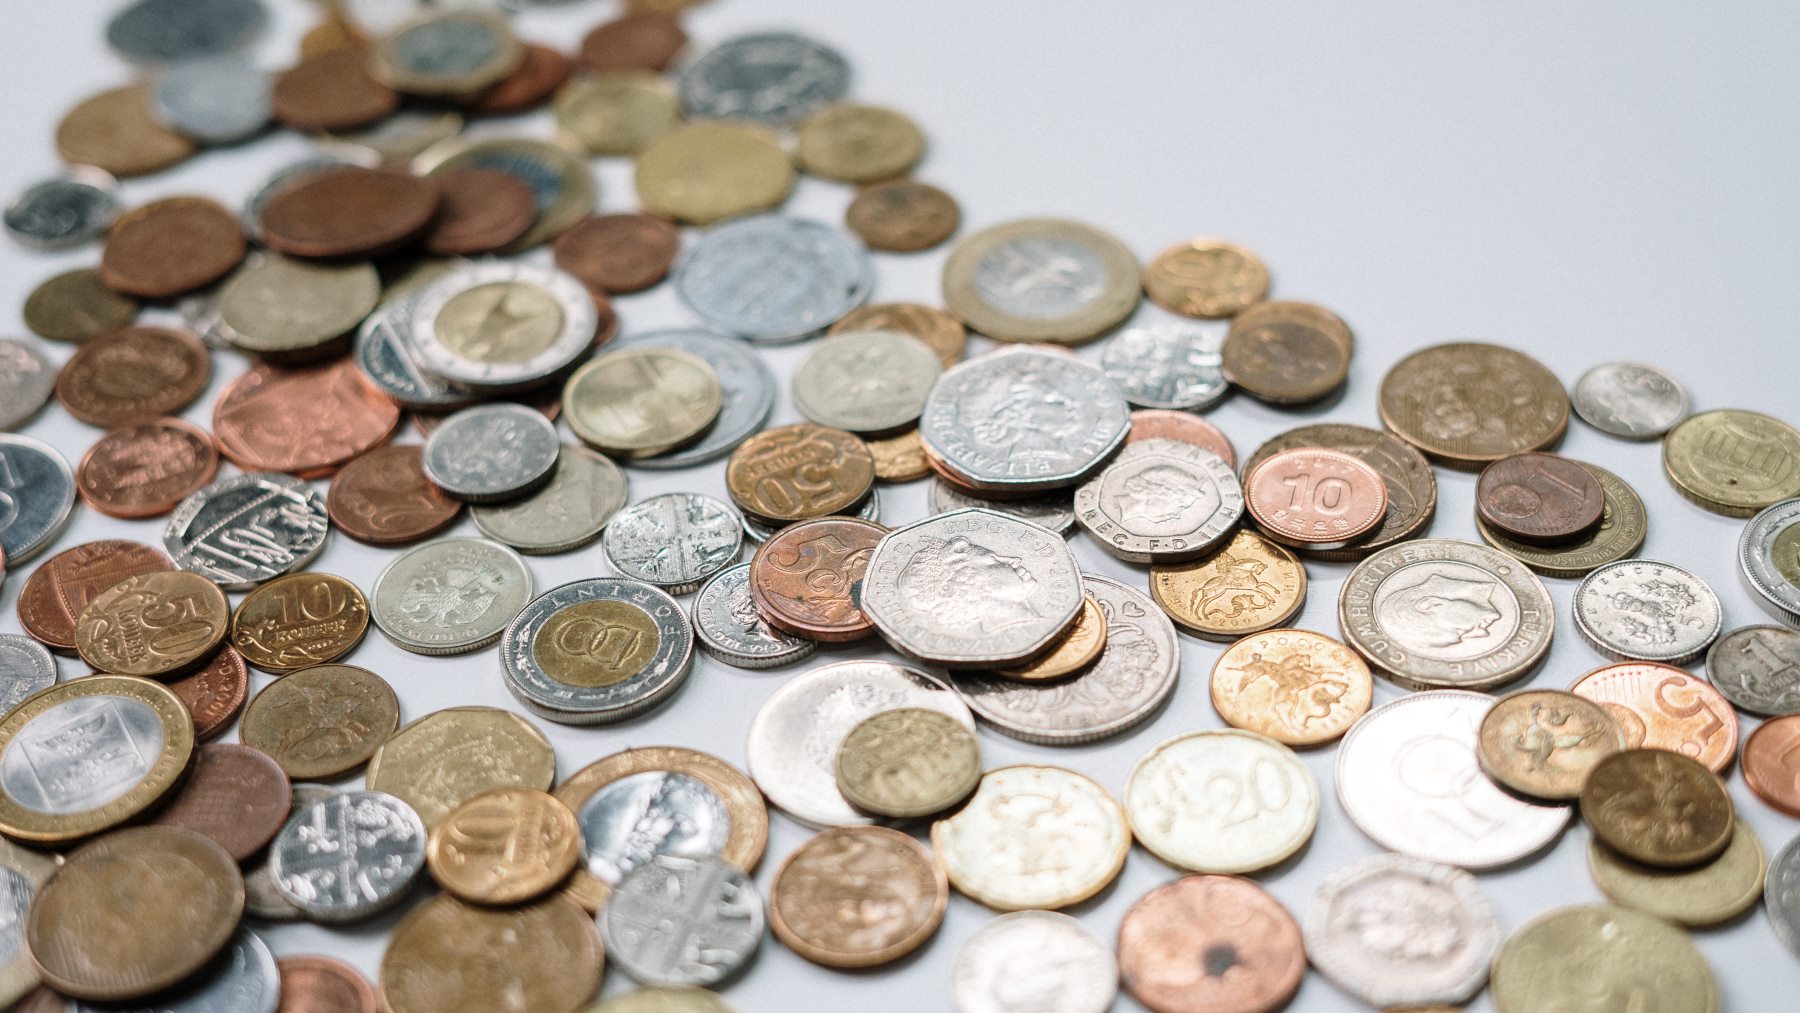 así son las monedas de 1 y 2 euros que circulan en España y son falsas